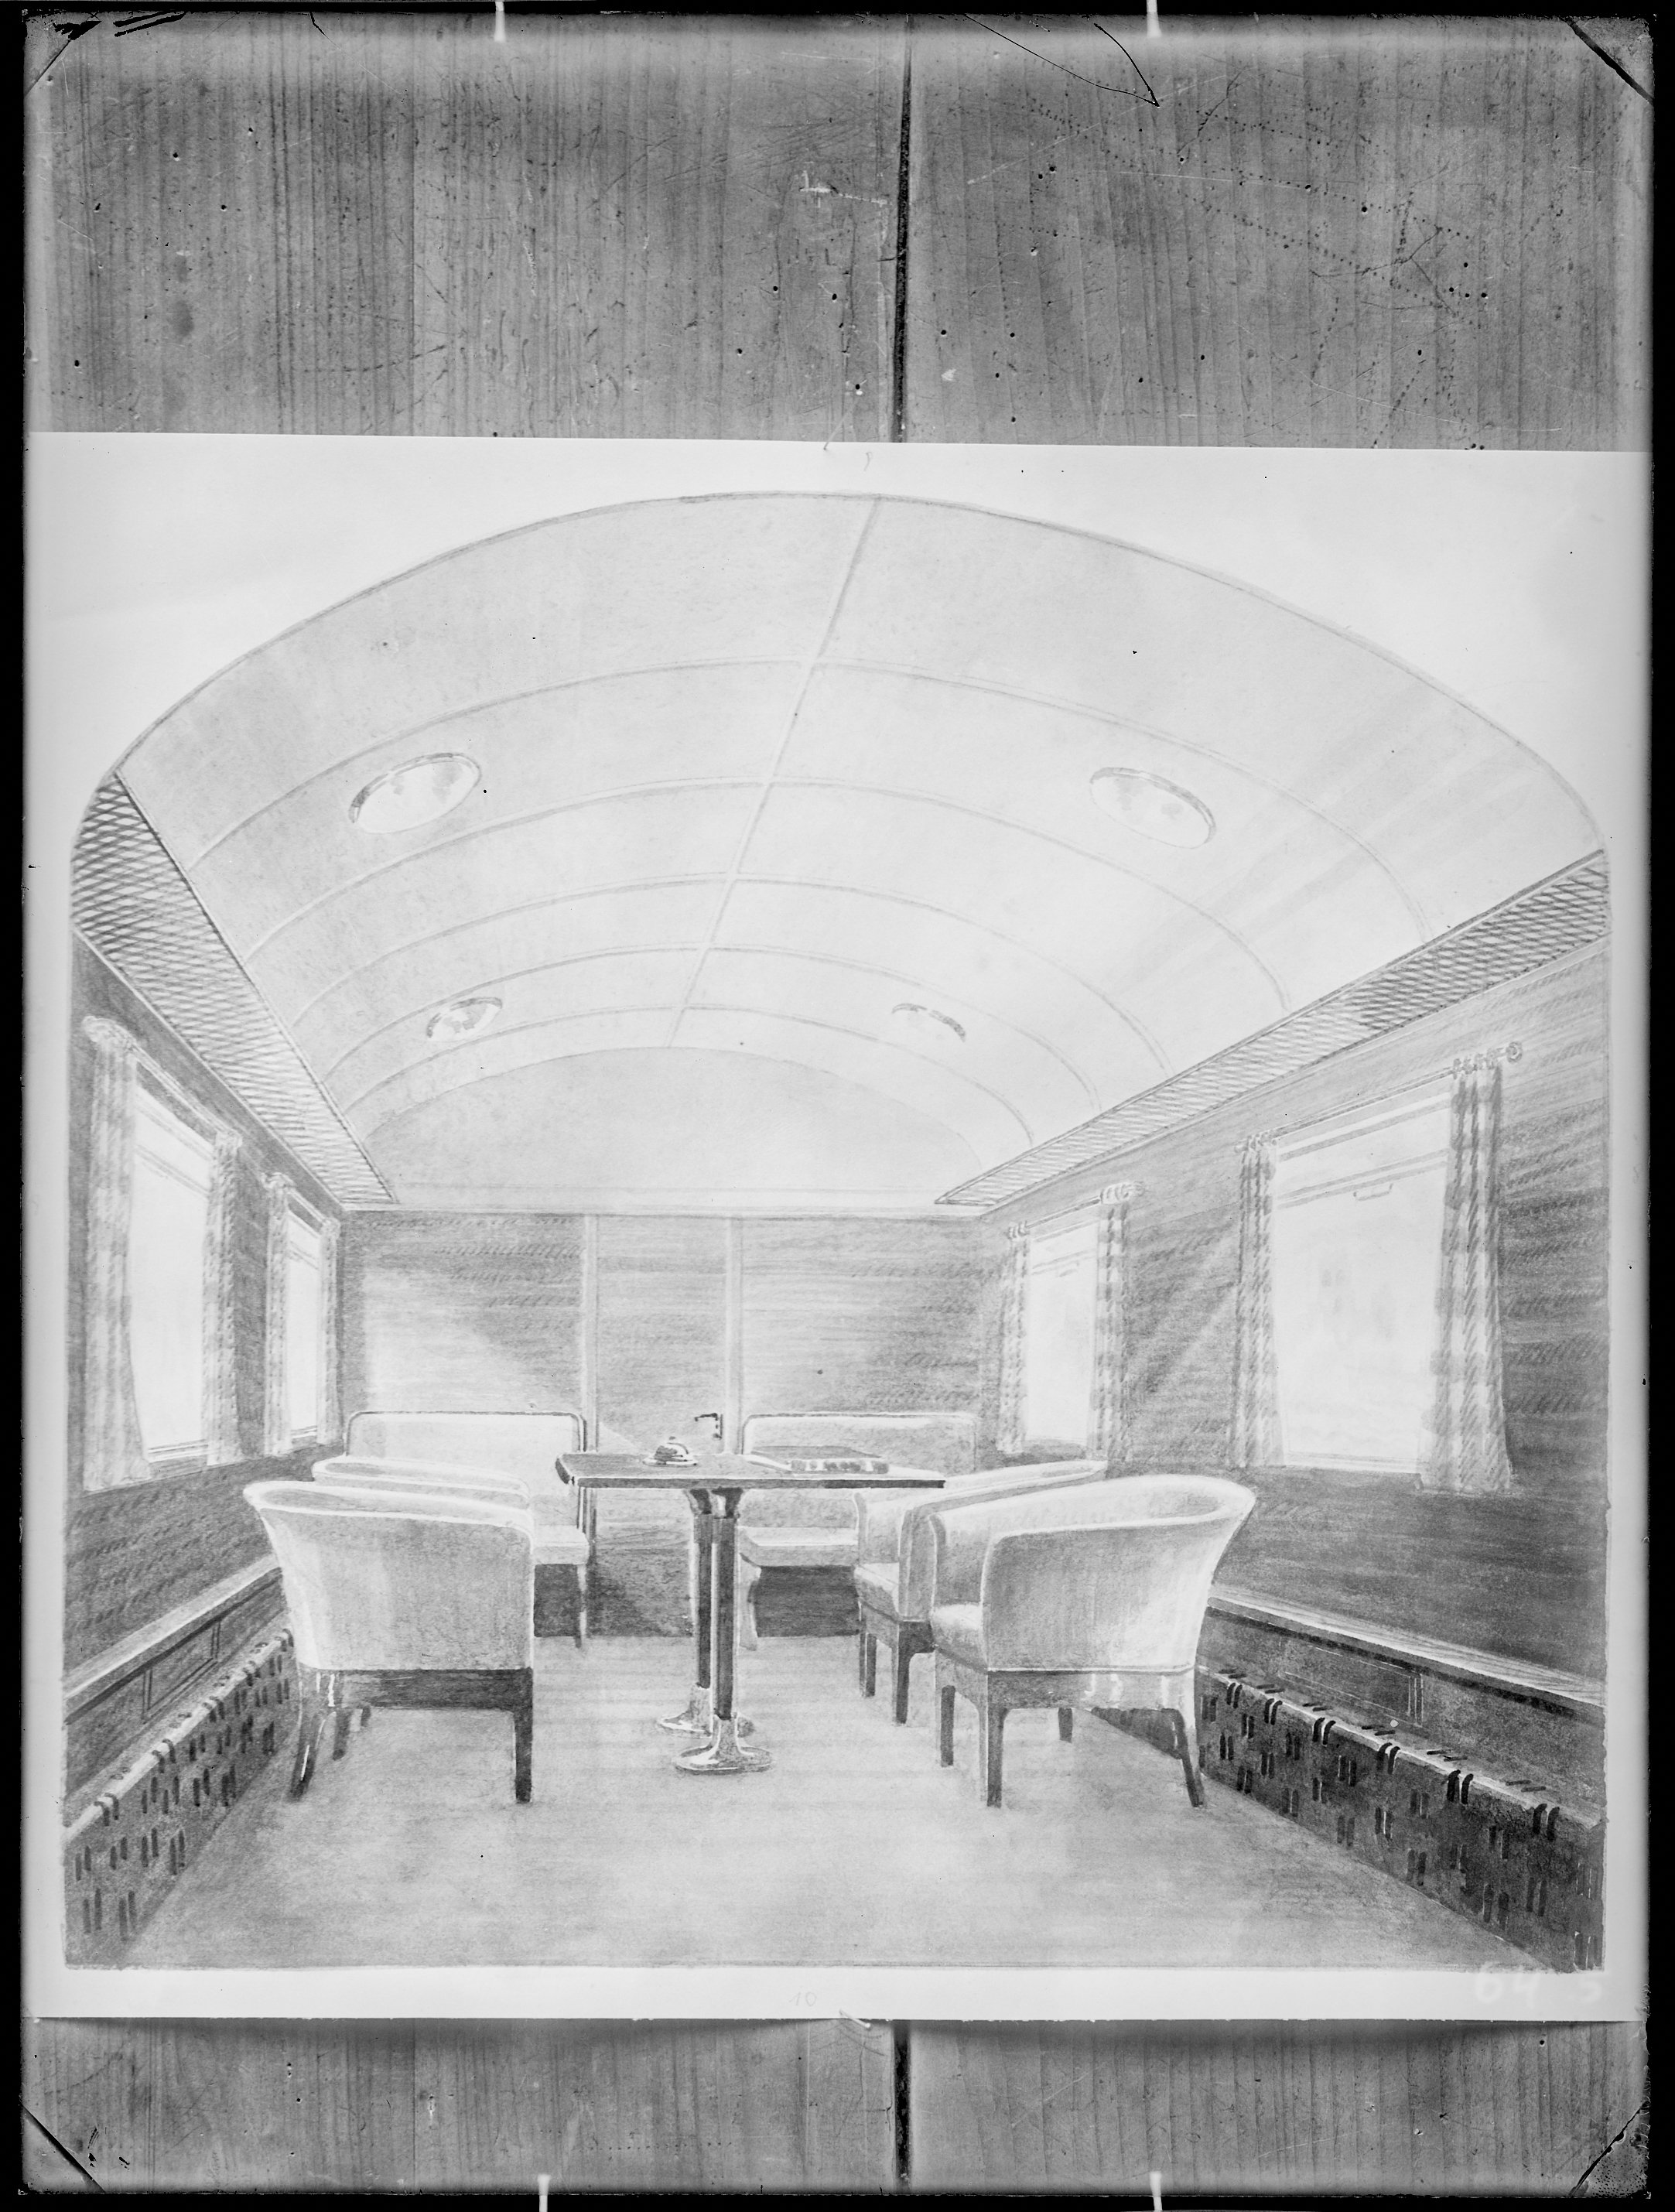 Fotografie: Entwurfszeichnung vermutlich für Salonwagen (Innenansicht), Sitzgruppe, um 1928? (Verkehrsmuseum Dresden CC BY-NC-SA)